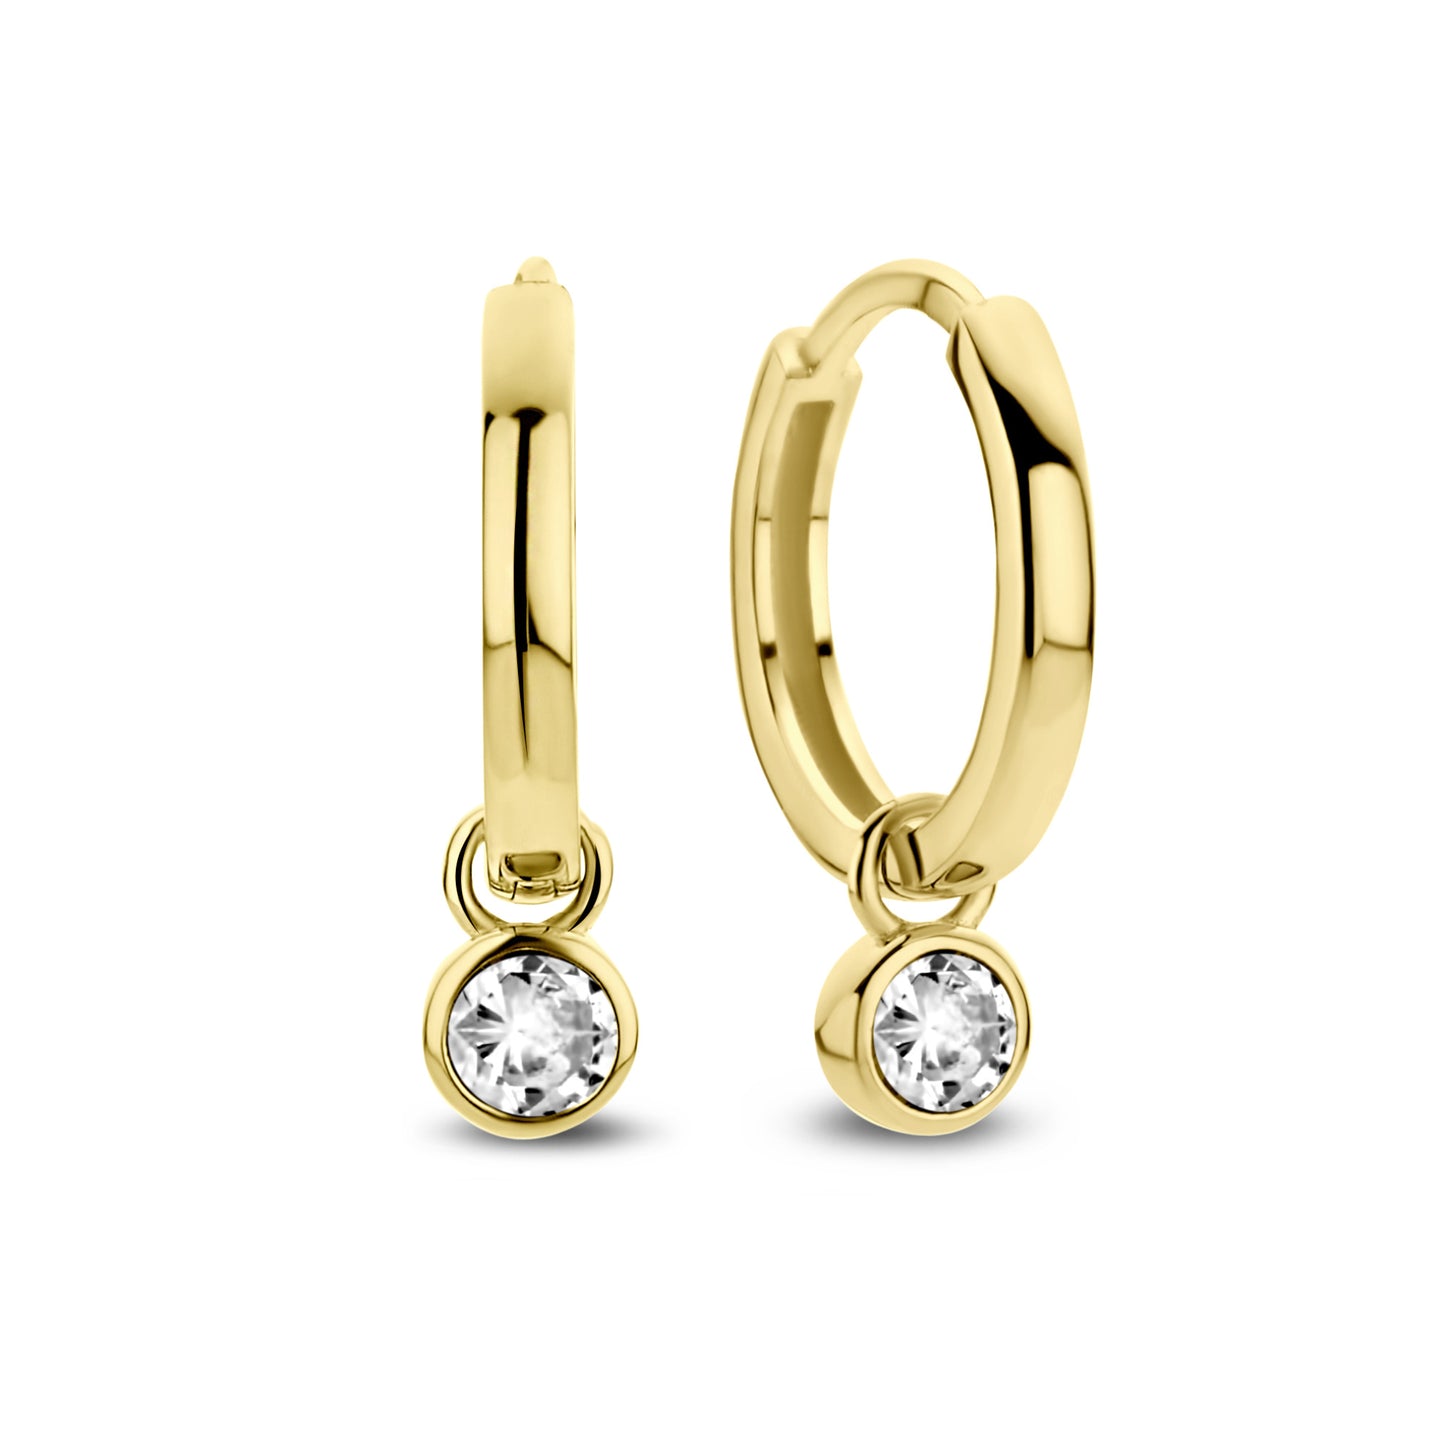 Venus 925 sterling silver gold plated hoop earrings with birthstone